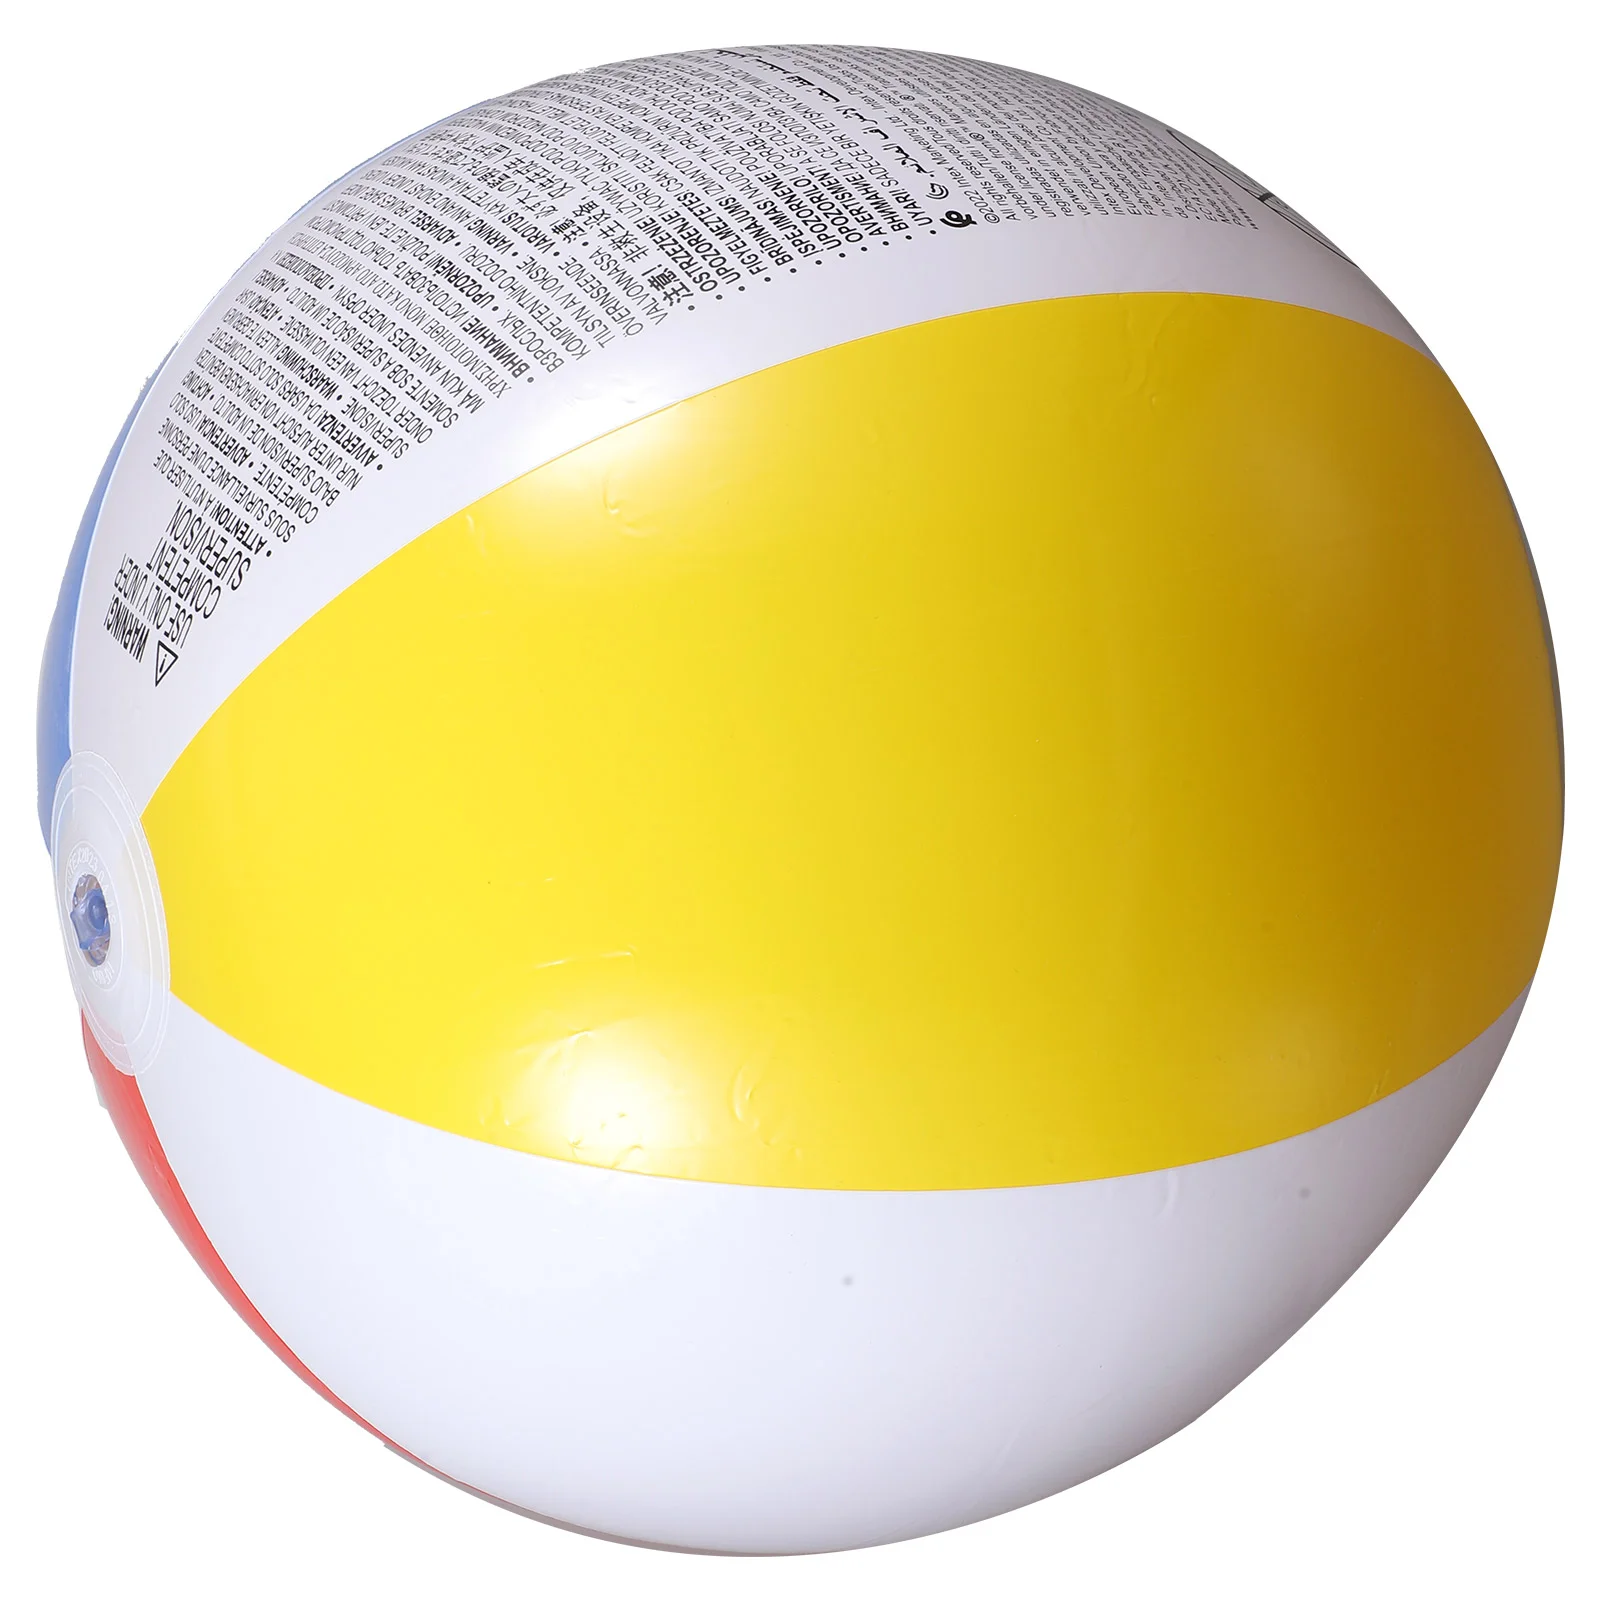 

Четырехцветный надувной пляжный мяч 59020, ненасос диаметром 51 см, игрушка для подростков, летние Мячи оптом, бассейн из ПВХ